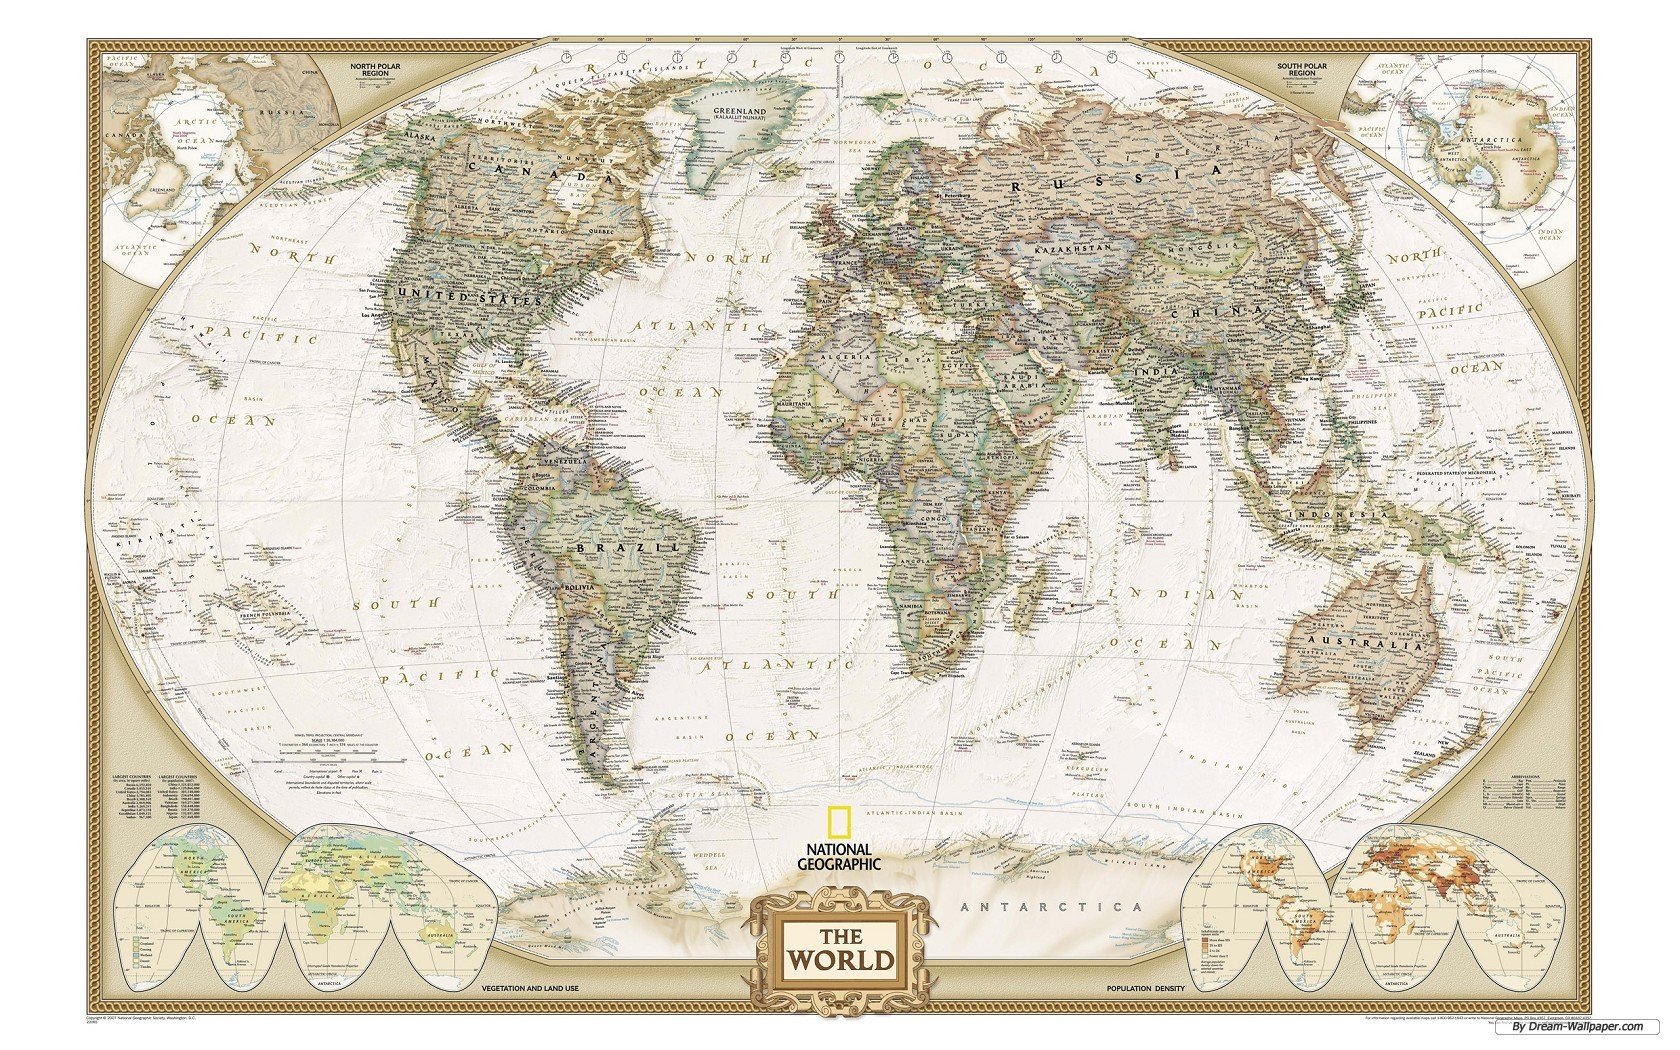  httpwwwdream wallpapercomtravel wallpaperworld map wallpaper